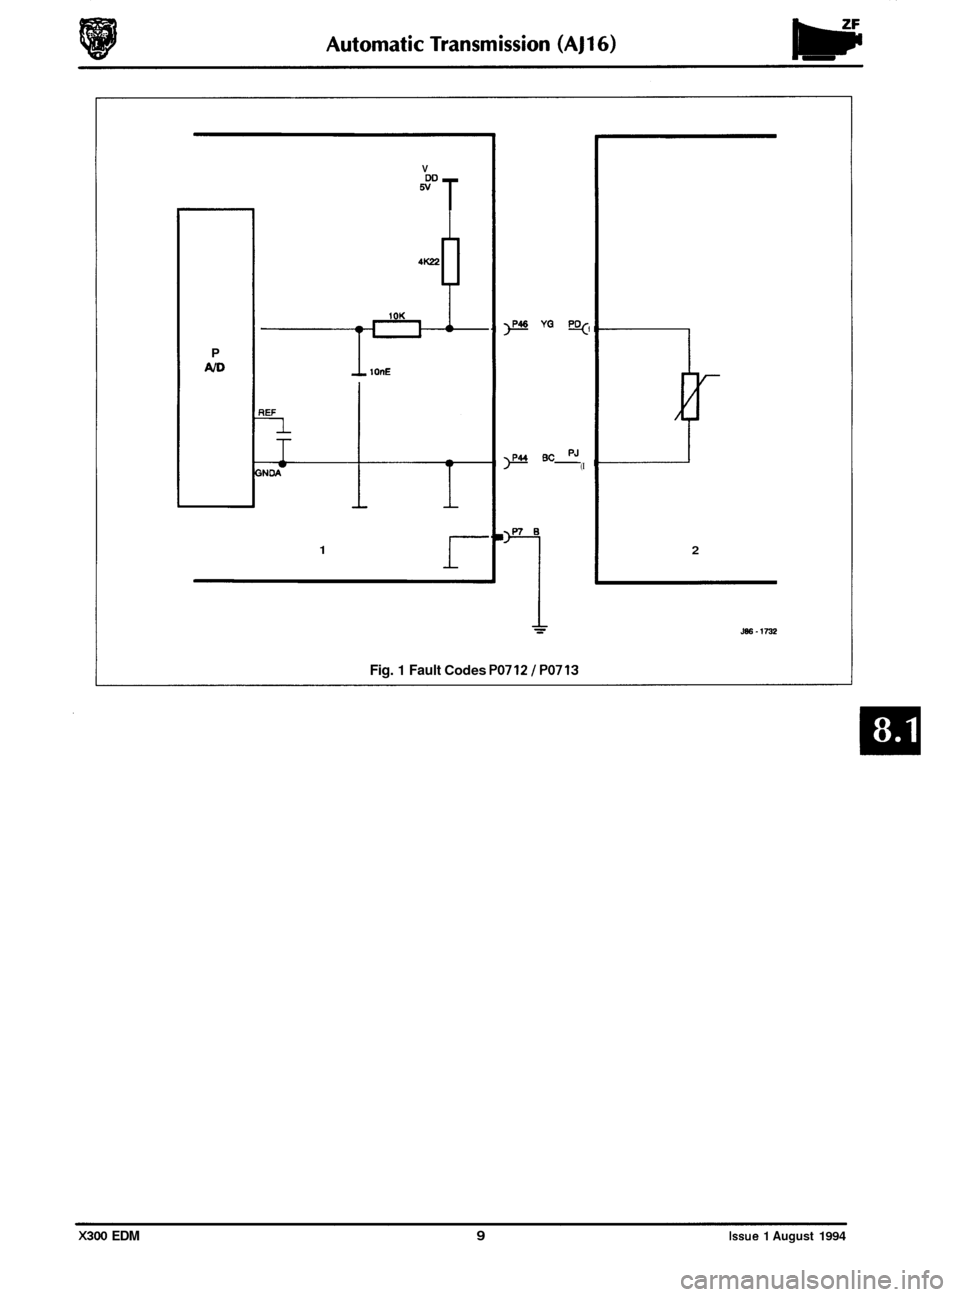 JAGUAR XJ6 1994 2.G Electrical Diagnostic Manual r 
P No 
1 r 
V 
ww T 
4 - lOnF 
)P46 YQ PO(, 
PJ (I )P44 Bc 
Fig. 1 Fault Codes PO712 / PO713 
2 
X300 EDM 9 Issue 1 August 1994  